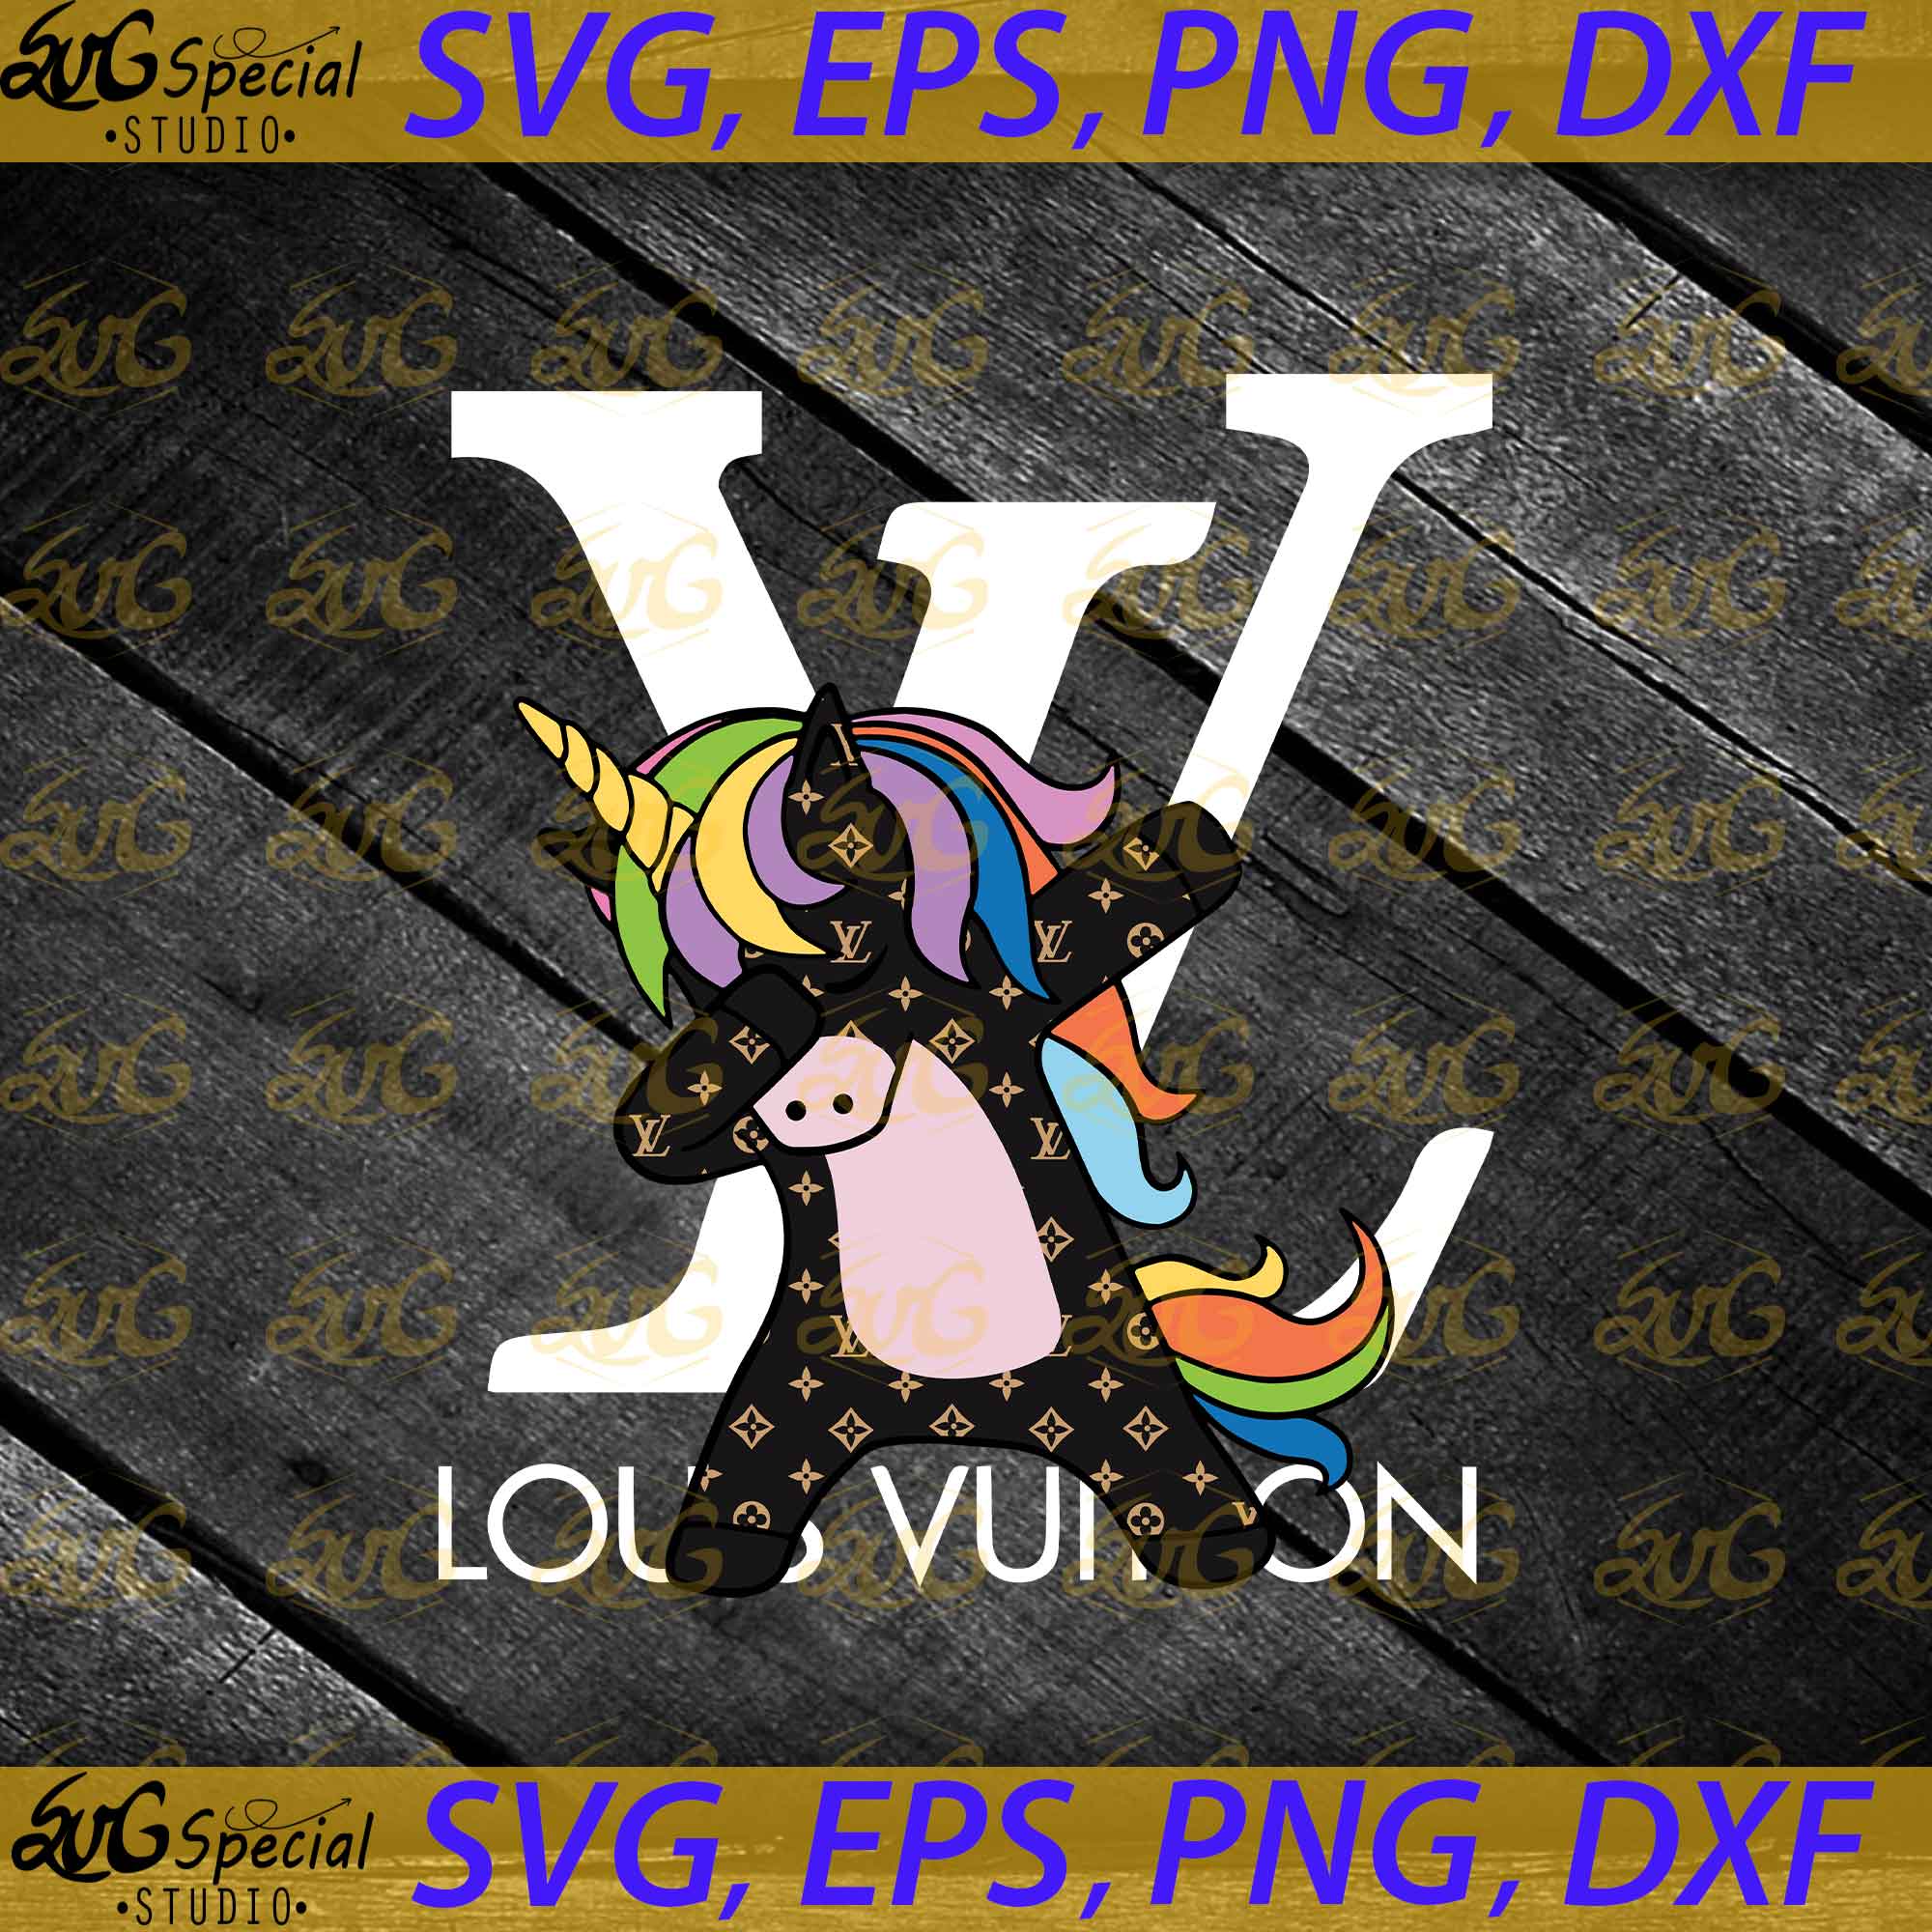 Louis Vuitton Logo SVG, Louis Vuitton SVG, Trending SVG, PNG